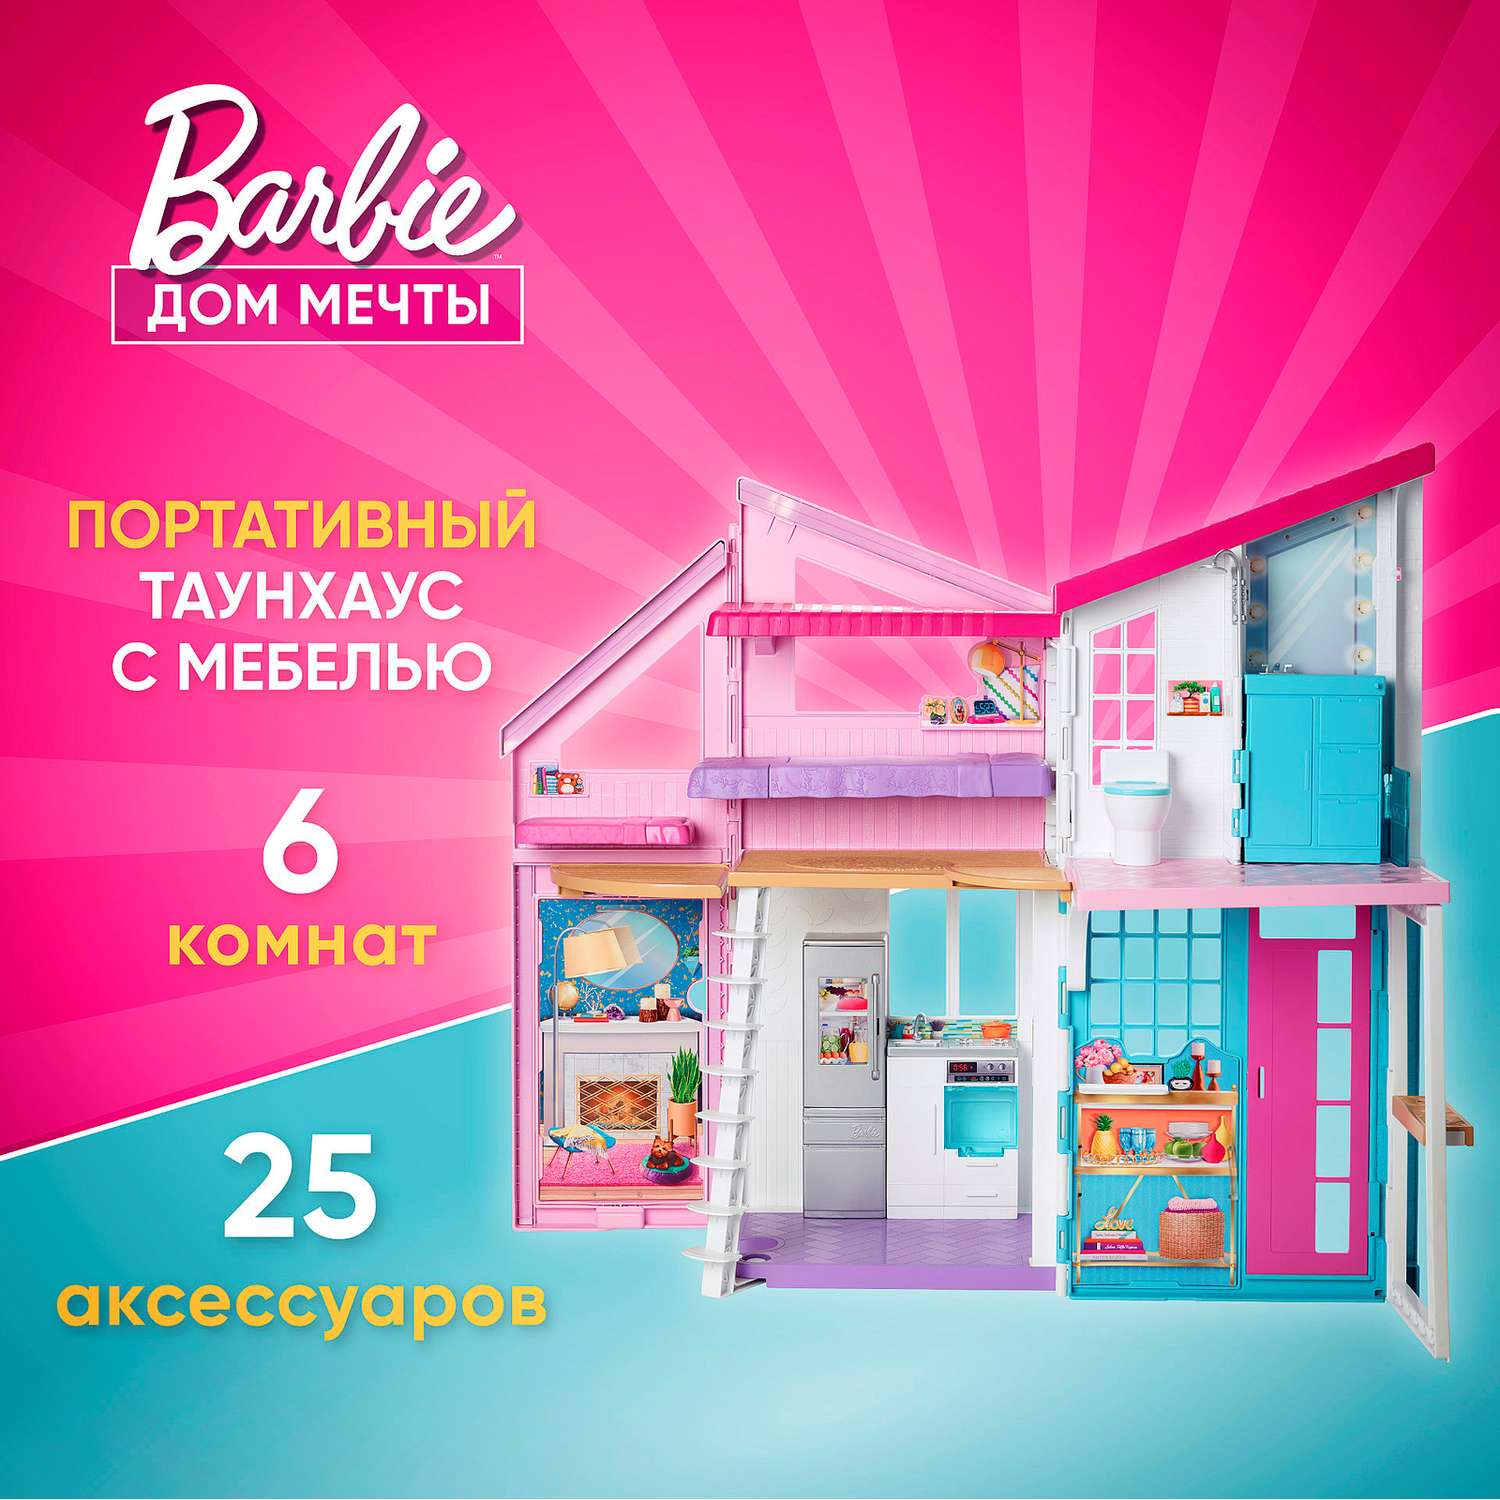 Игры Барби интерьер для девочек